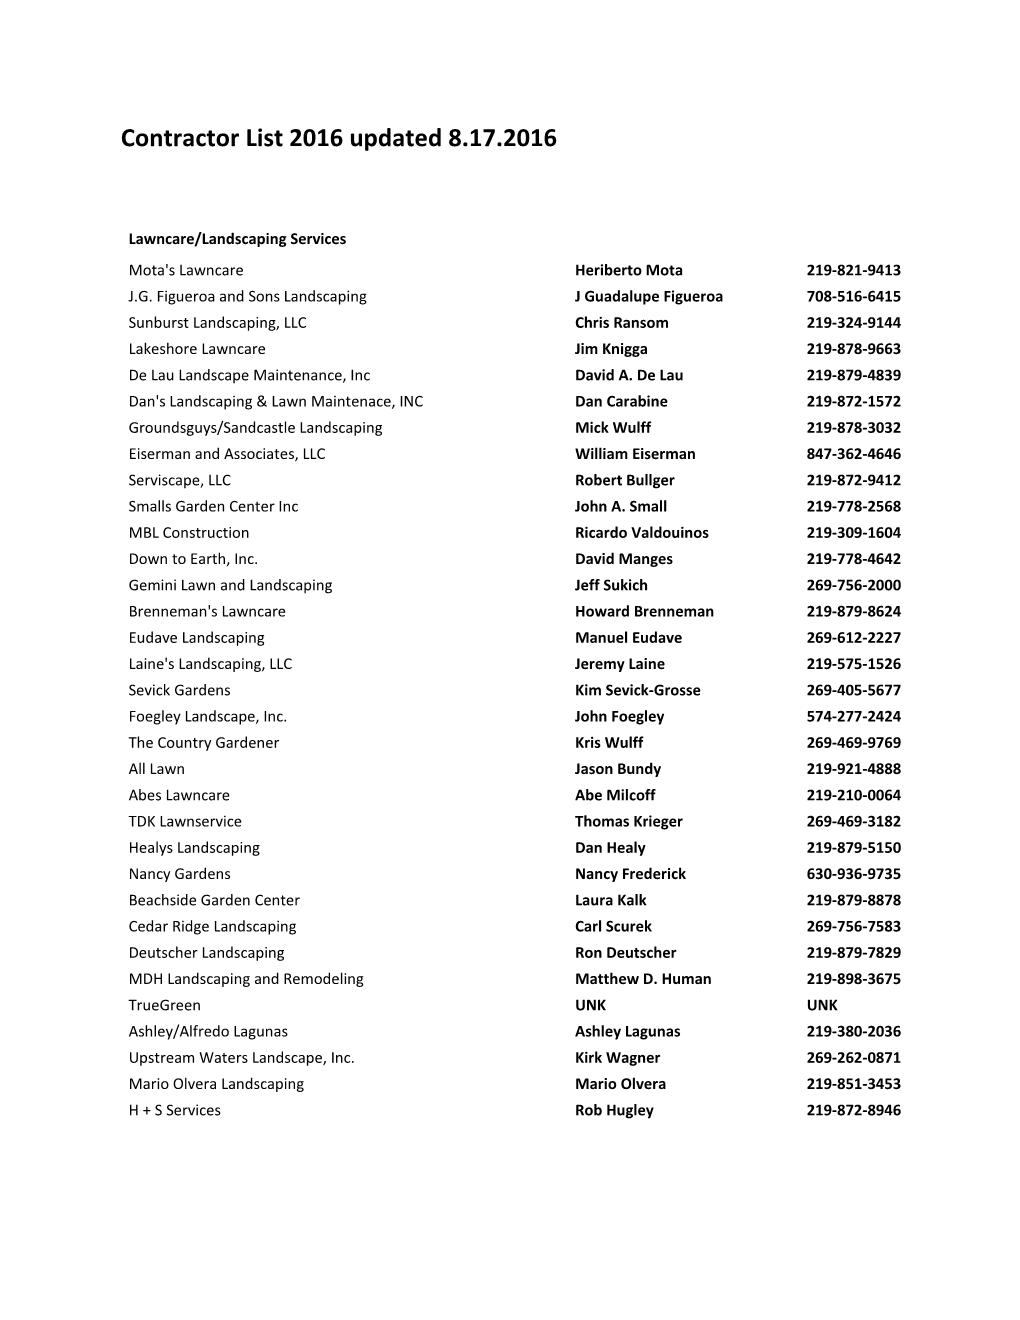 Contractor List 2016 Updated 8.17.2016